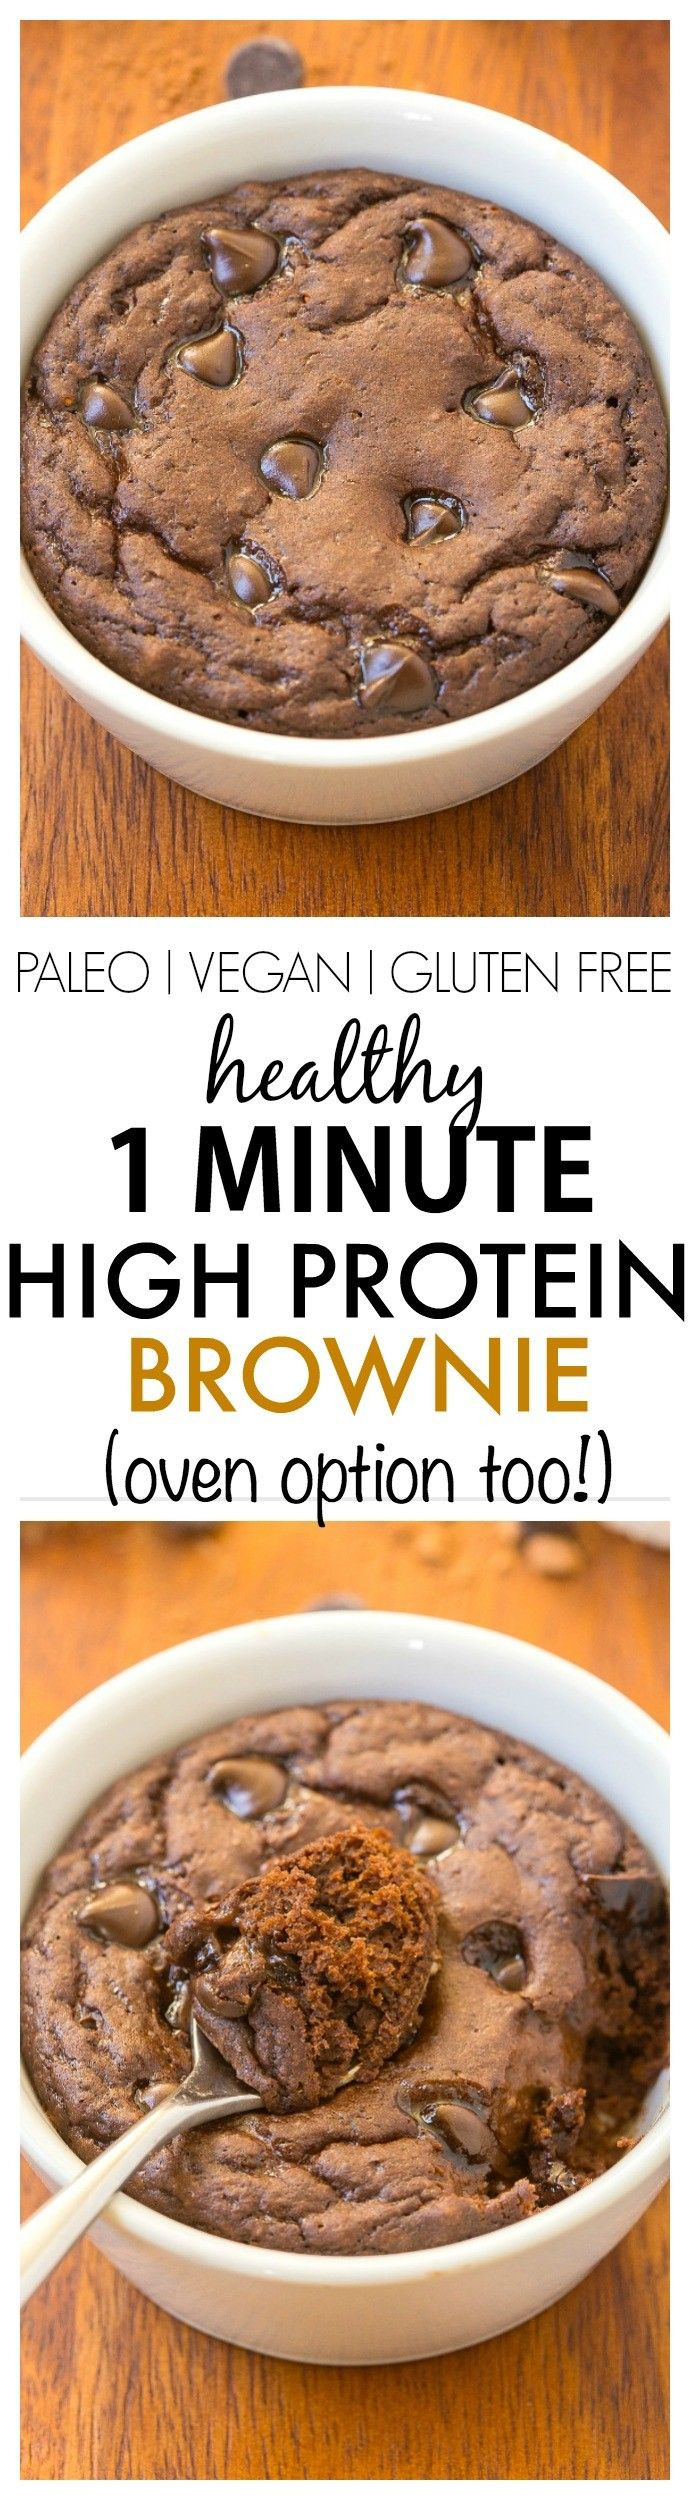 Protein Dessert Recipes
 Best 25 Protein brownies ideas on Pinterest